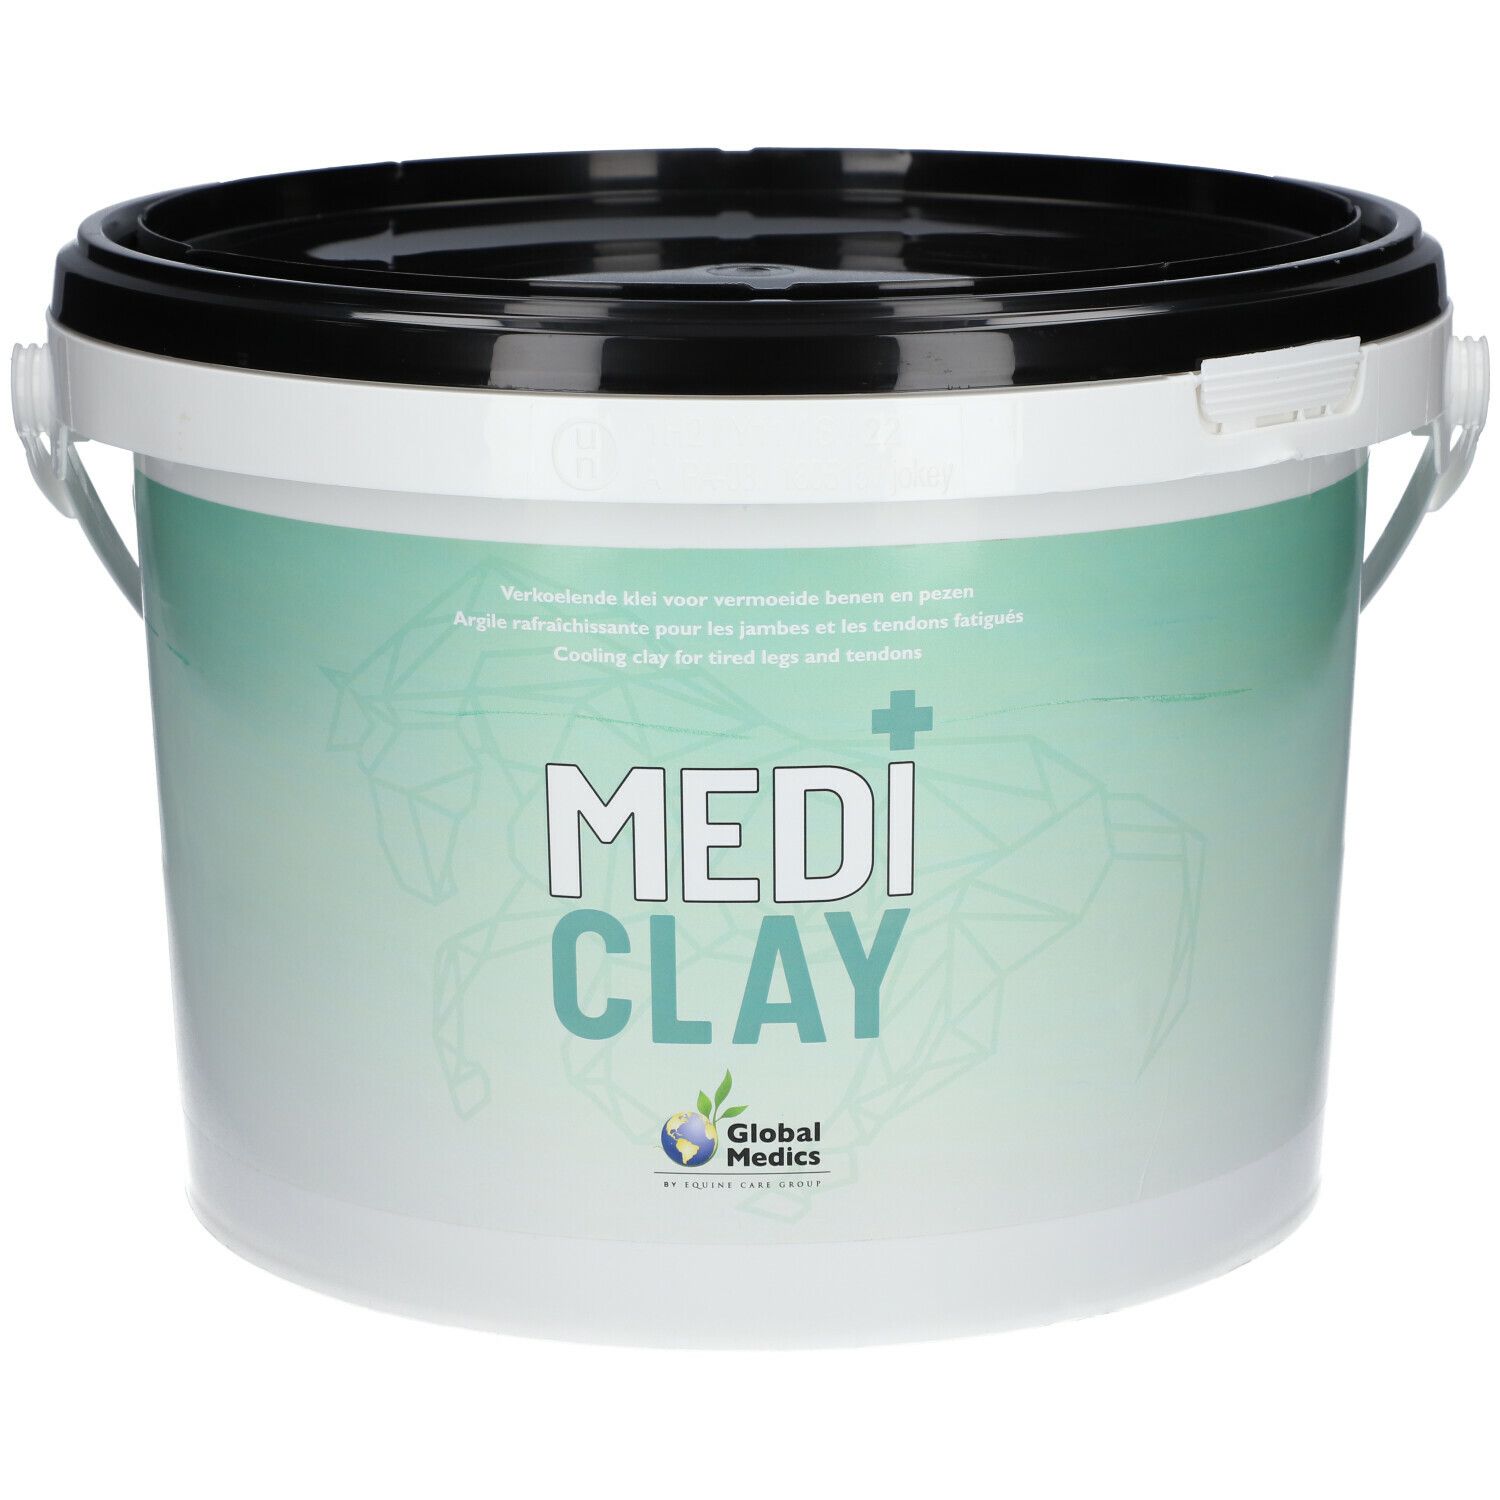 Global Medics Medi Clay 10 kg